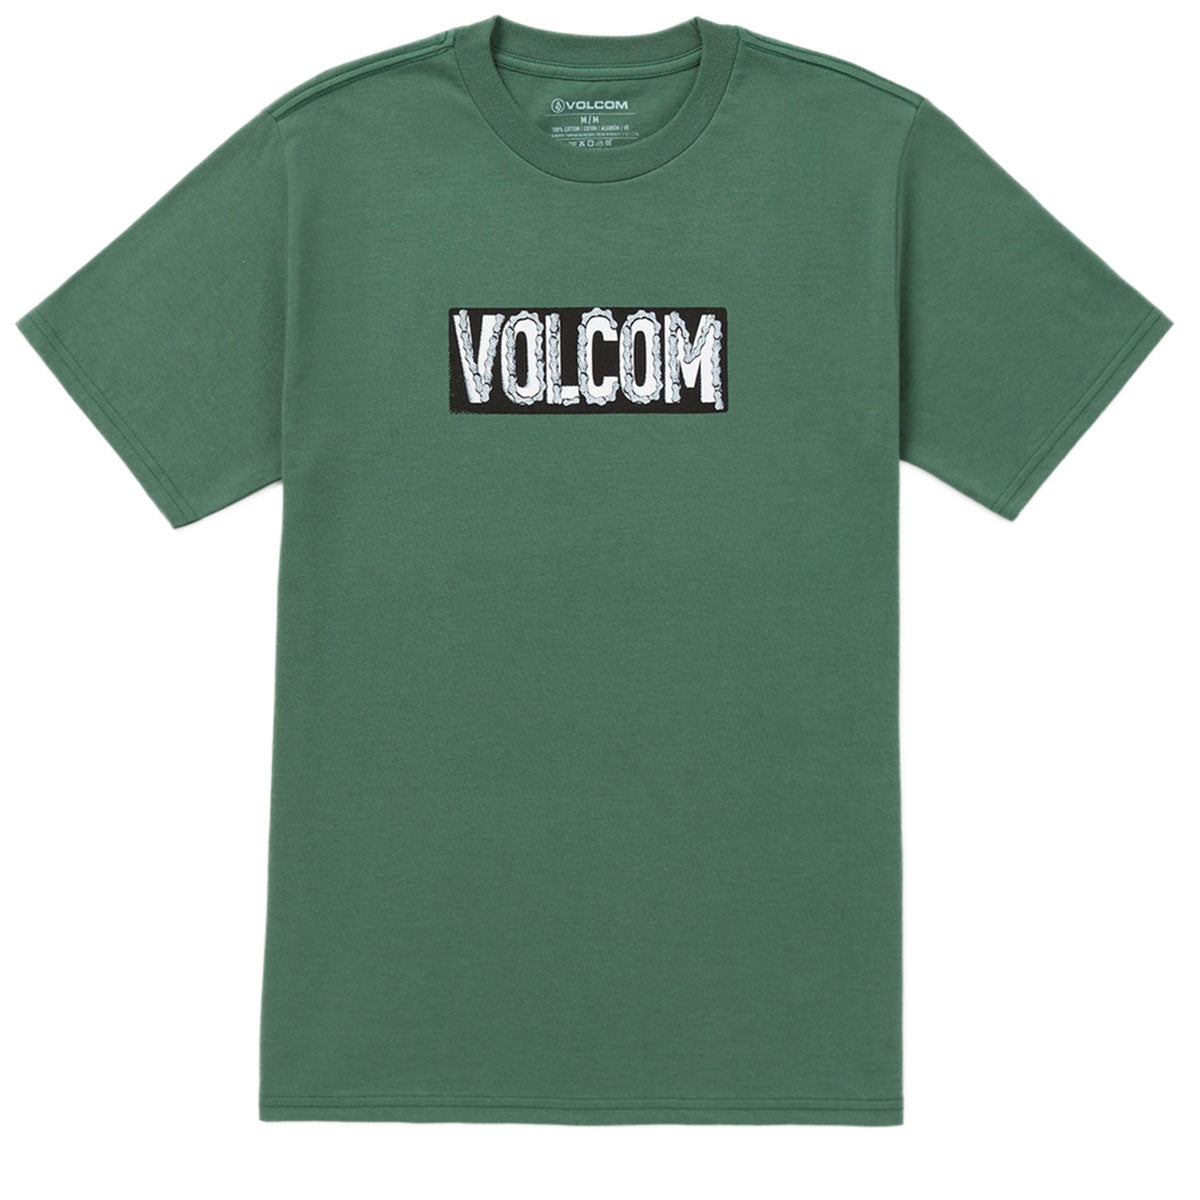 Volcom Chaindrive T-Shirt - Fir Green image 1